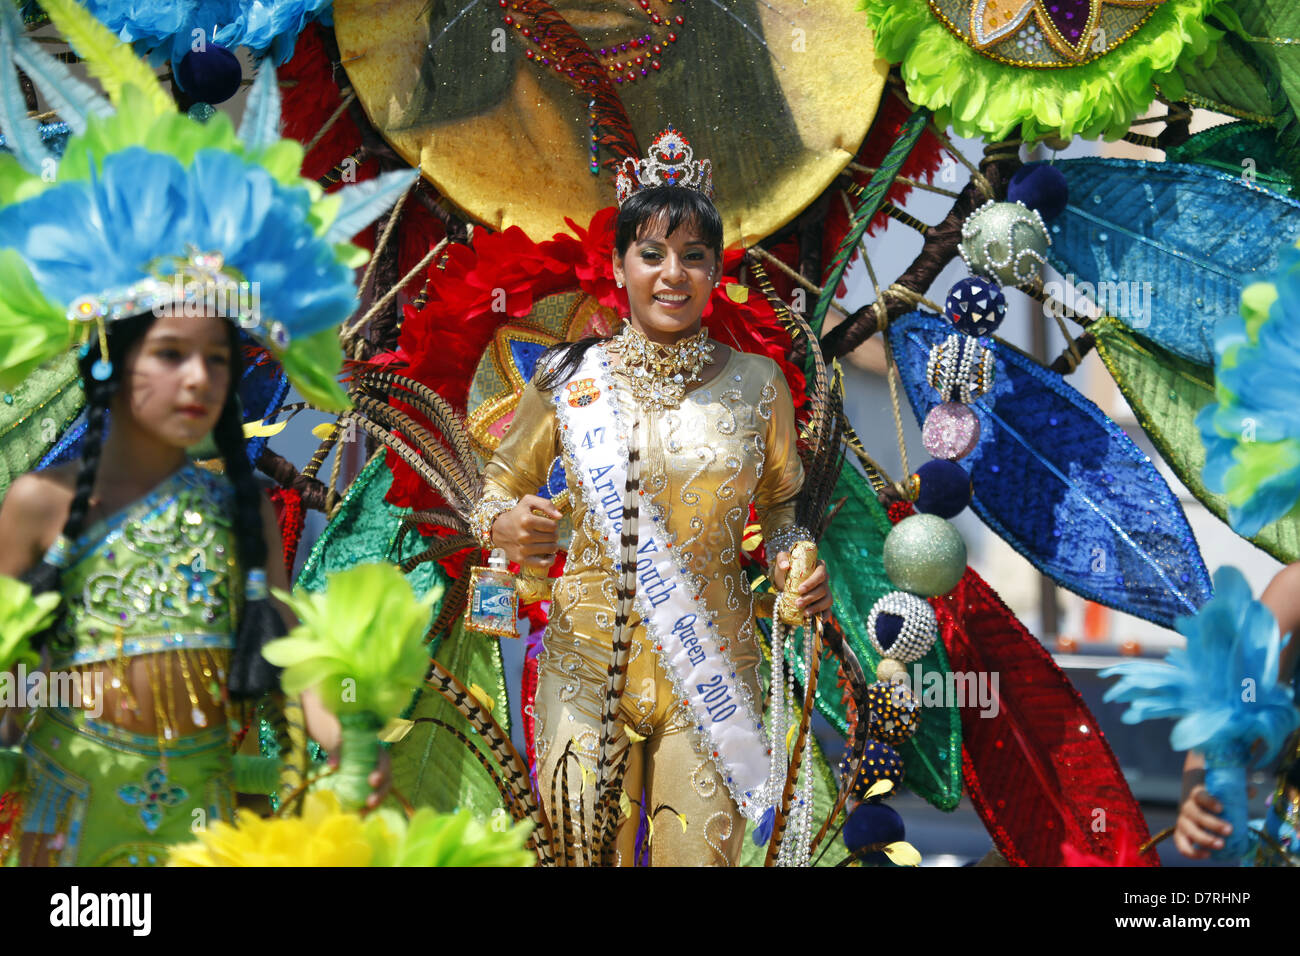 Reina Carnaval Fotos e Imágenes de stock - Alamy